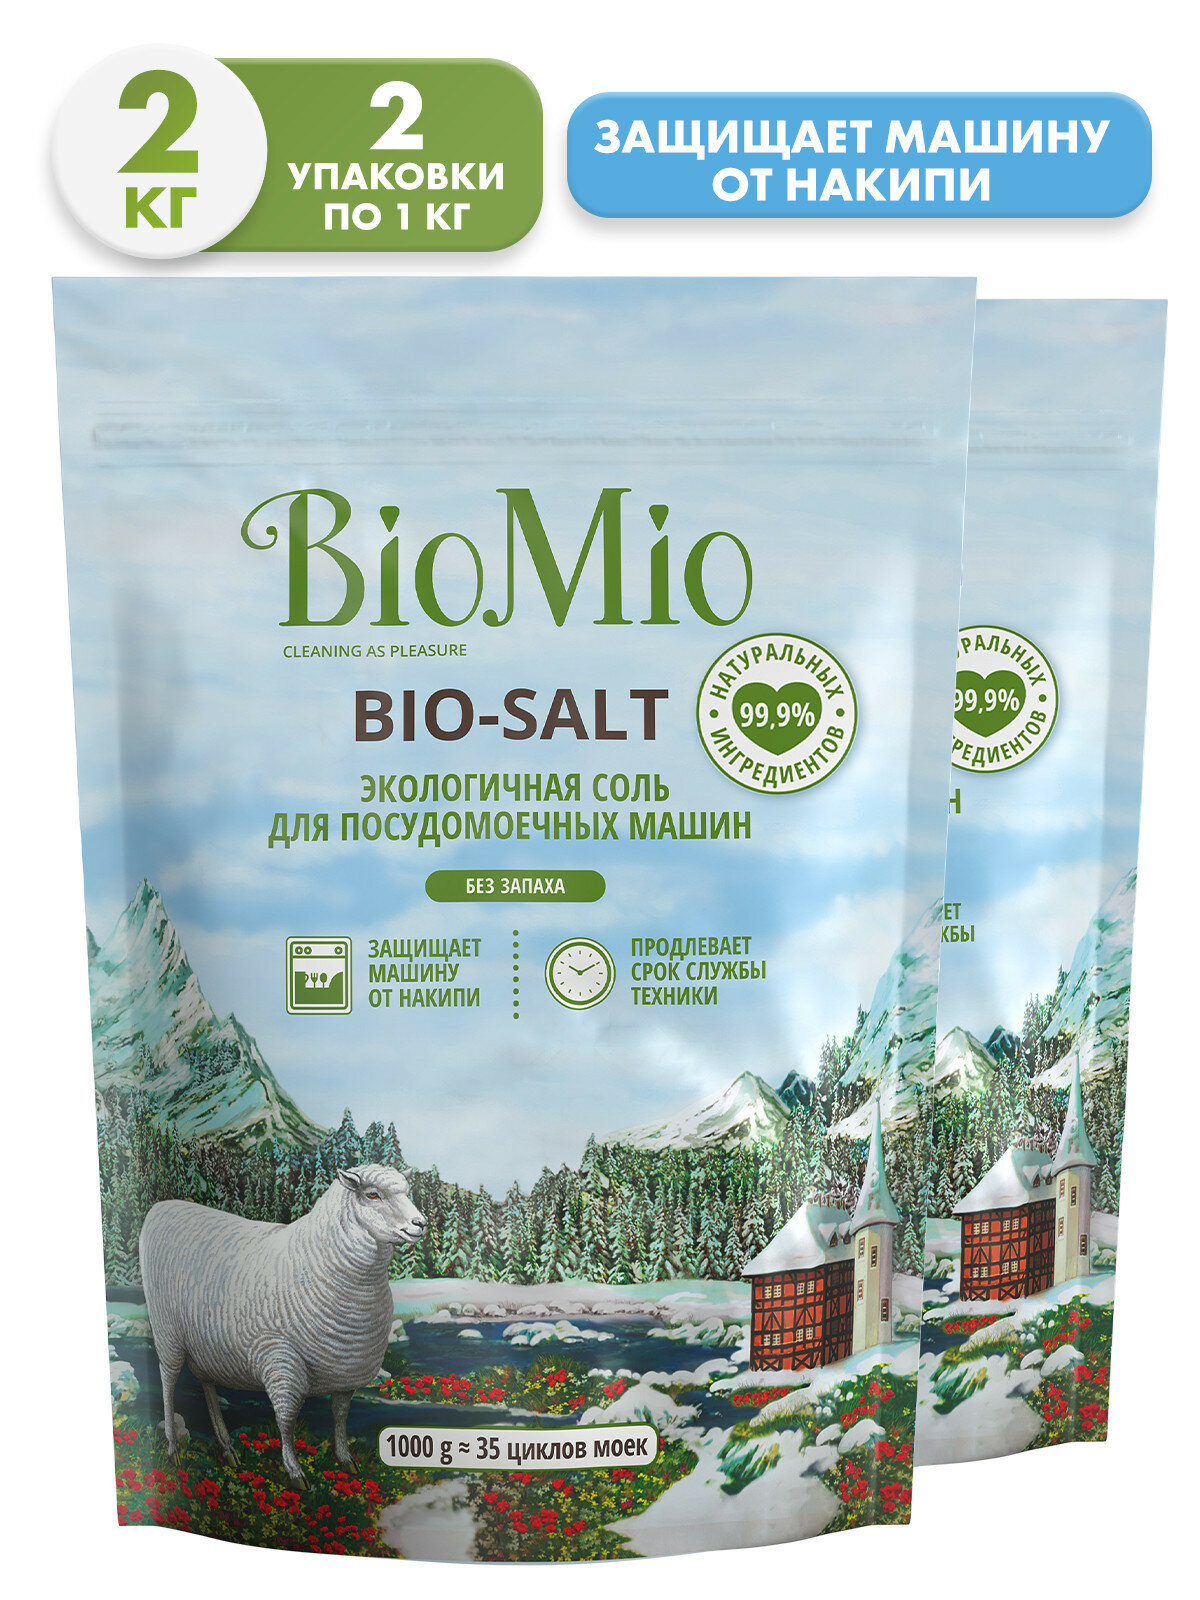 BioMio. BIO-SALT Экологичная соль для посудомоечных машин / BioMio. BIO-SALT Eco Dish Washer Salt. 1000 г (2 шт)